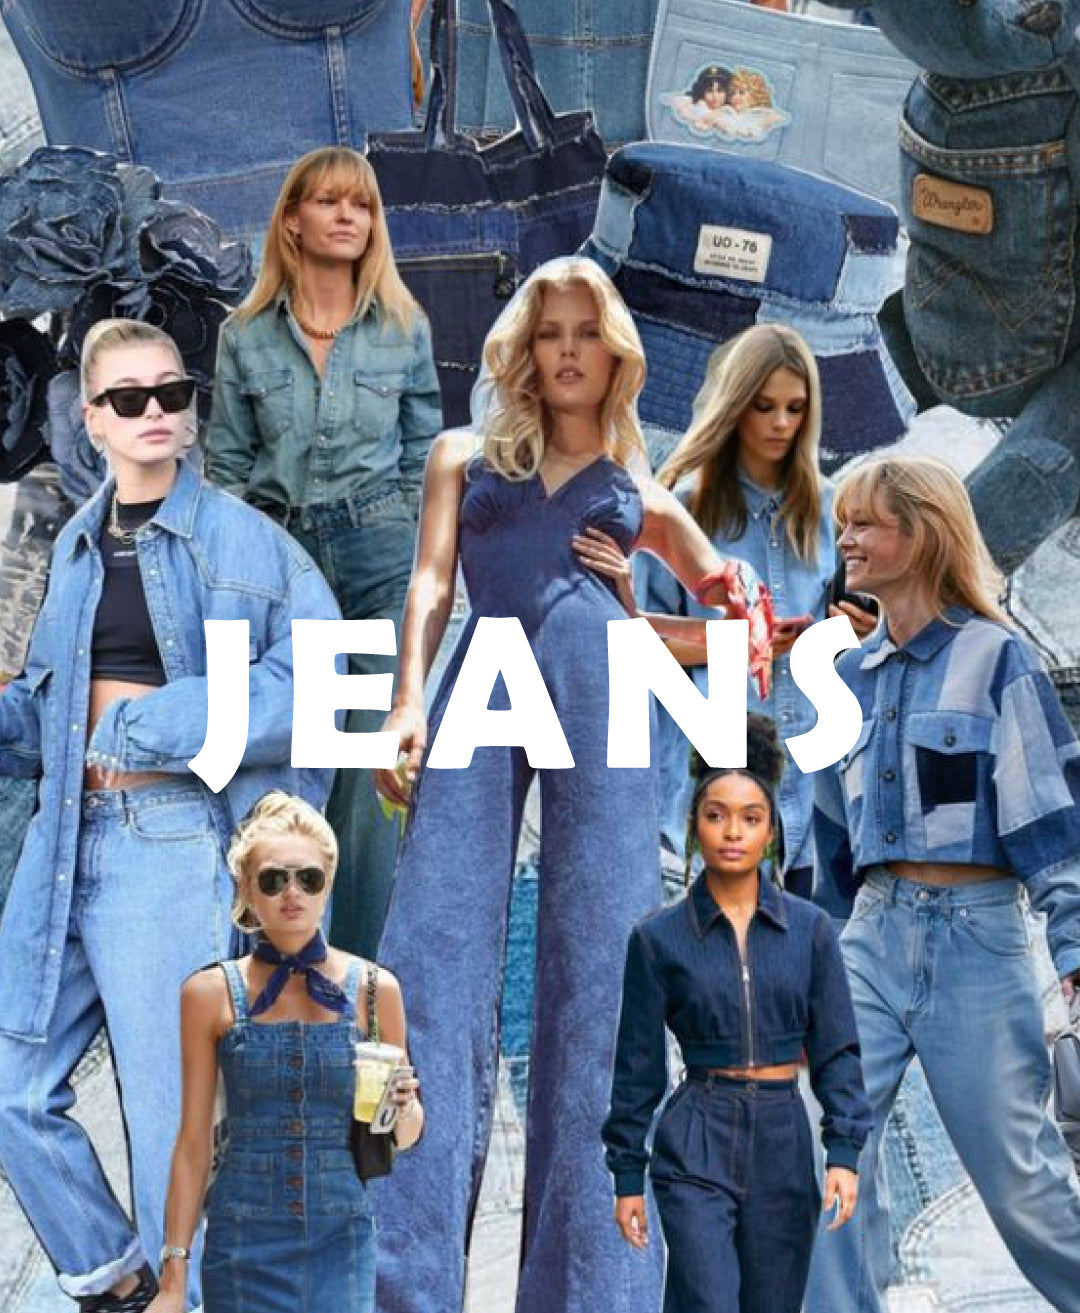 Los jeans: una prenda icónica a lo largo de la historia